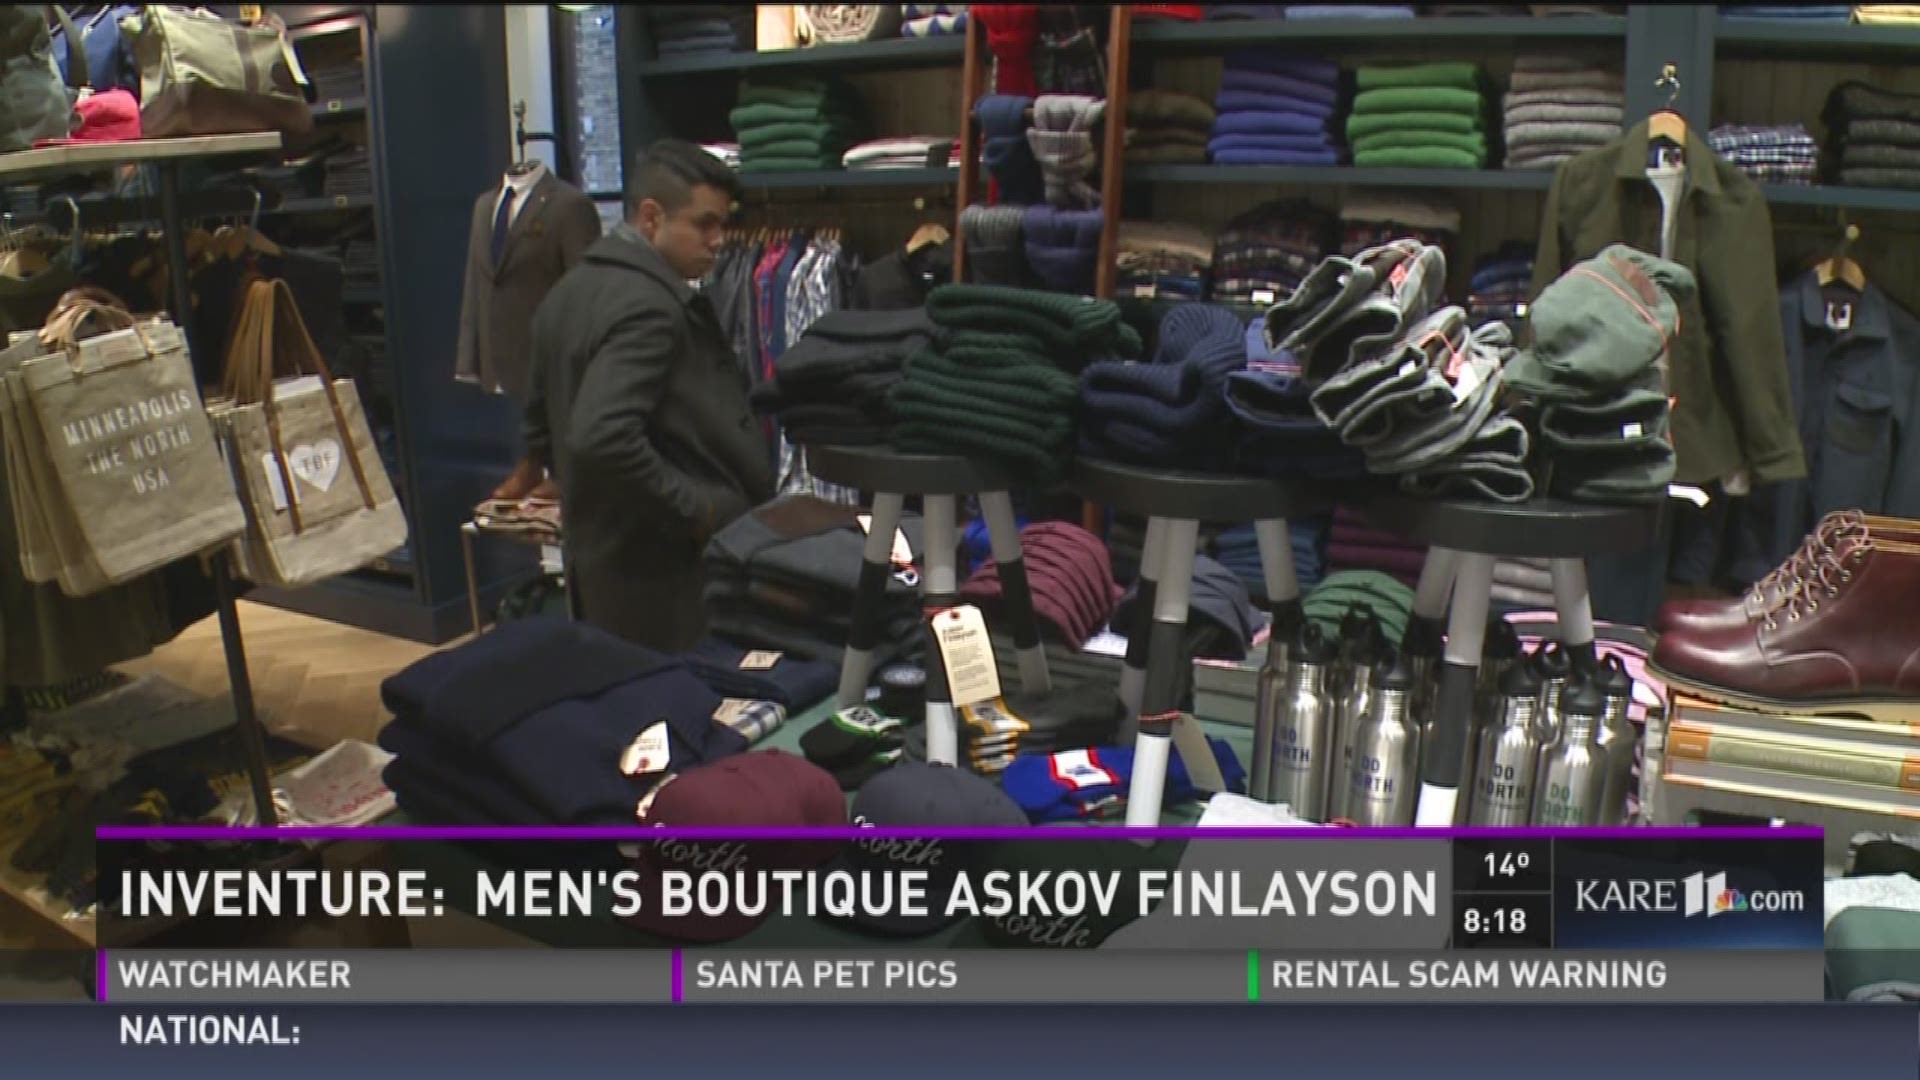 Inventure: Men's boutique Askov Finlayson 